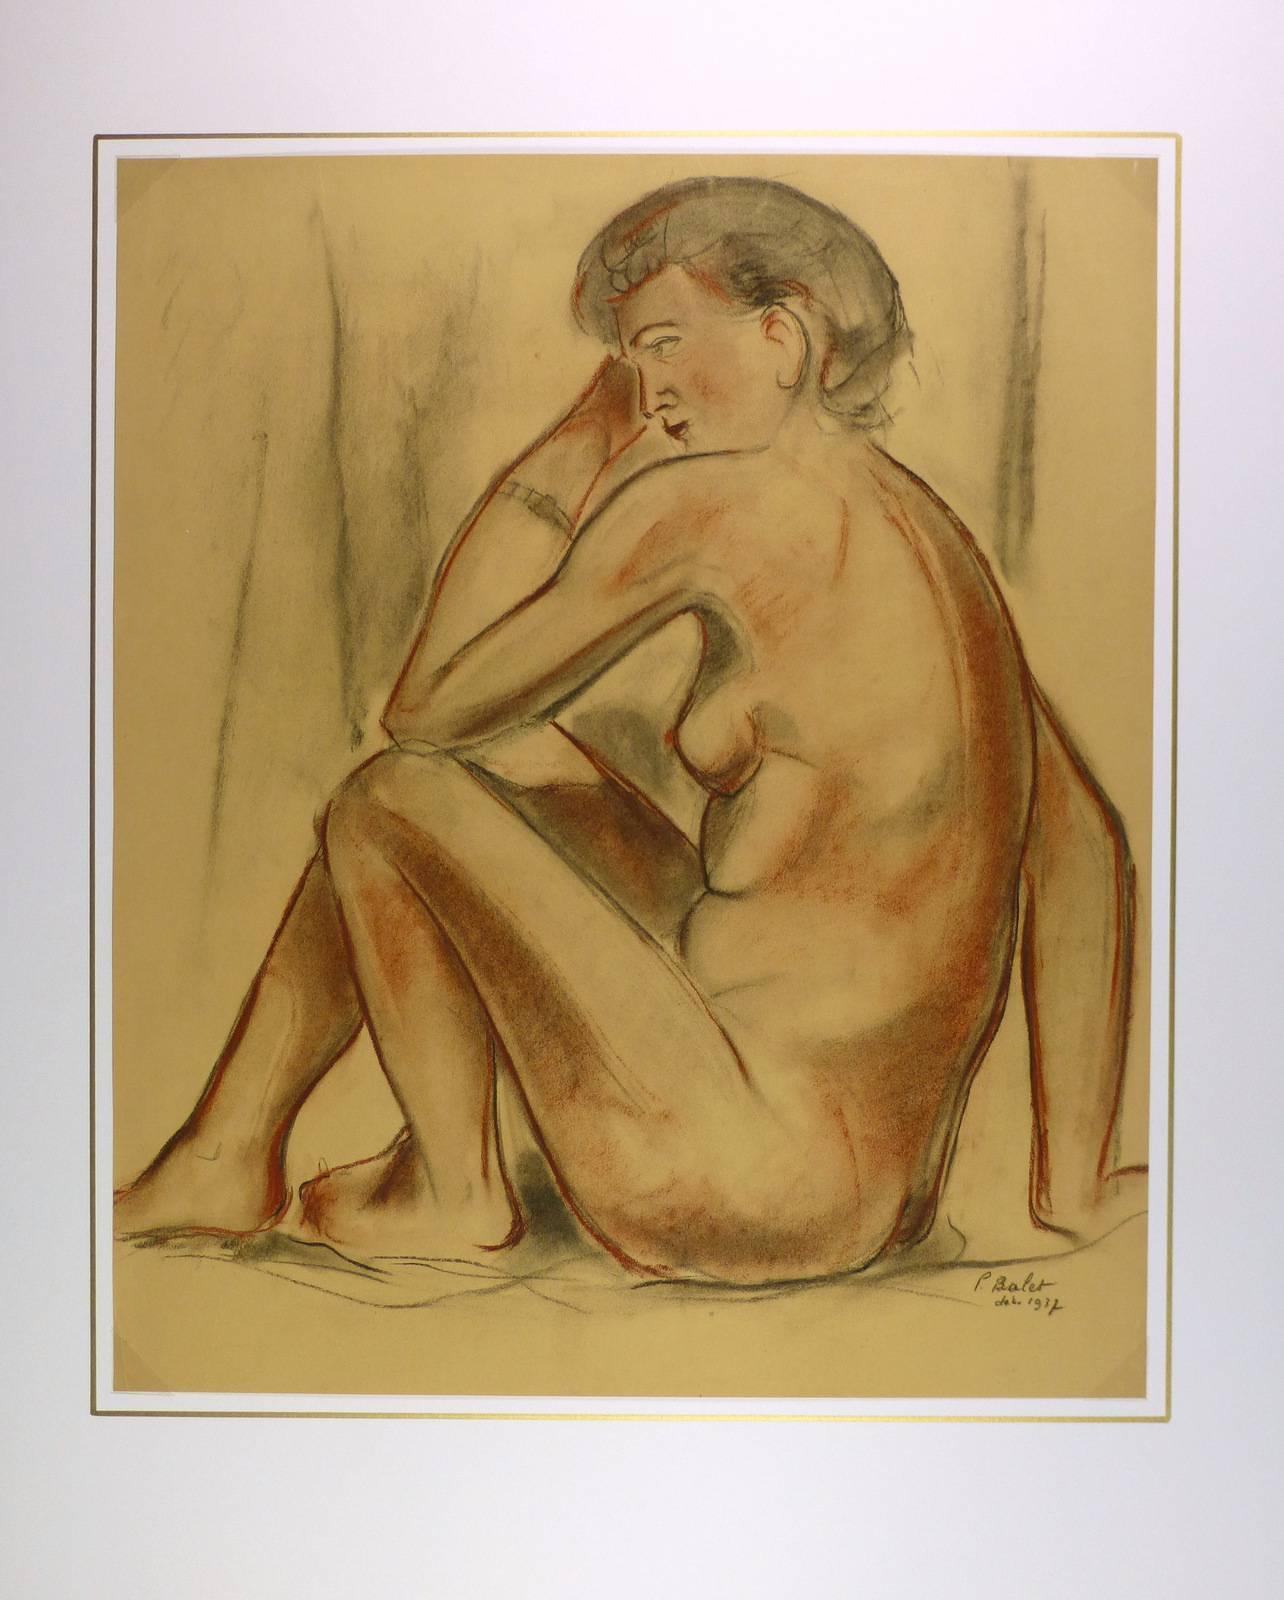 Dessin au fusain d'une femme nue posant devant un drapé de l'artiste français P. Balet, 1937. Notez la finesse des éléments du visage et les légers traits de modernisme. Signé et daté en bas à droite.  

Œuvre d'art originale sur papier présentée